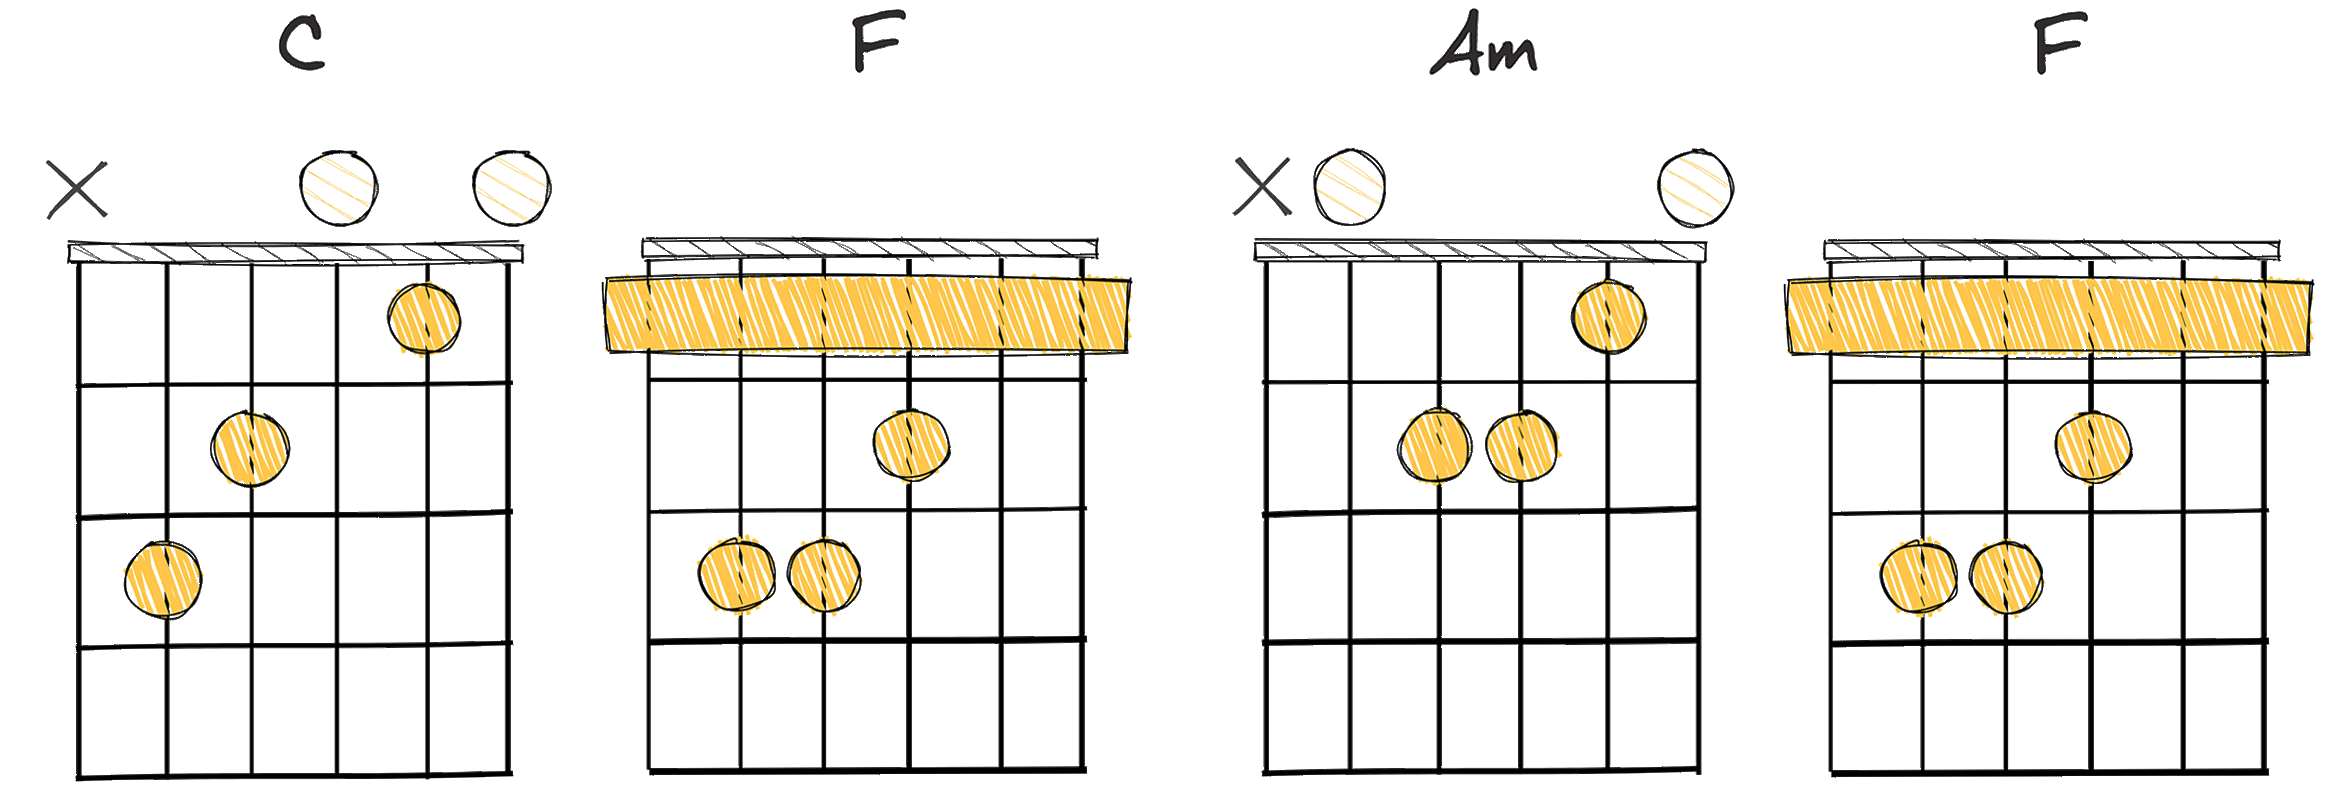 I - IV - vi - IV (1-4-6-4) chords diagram